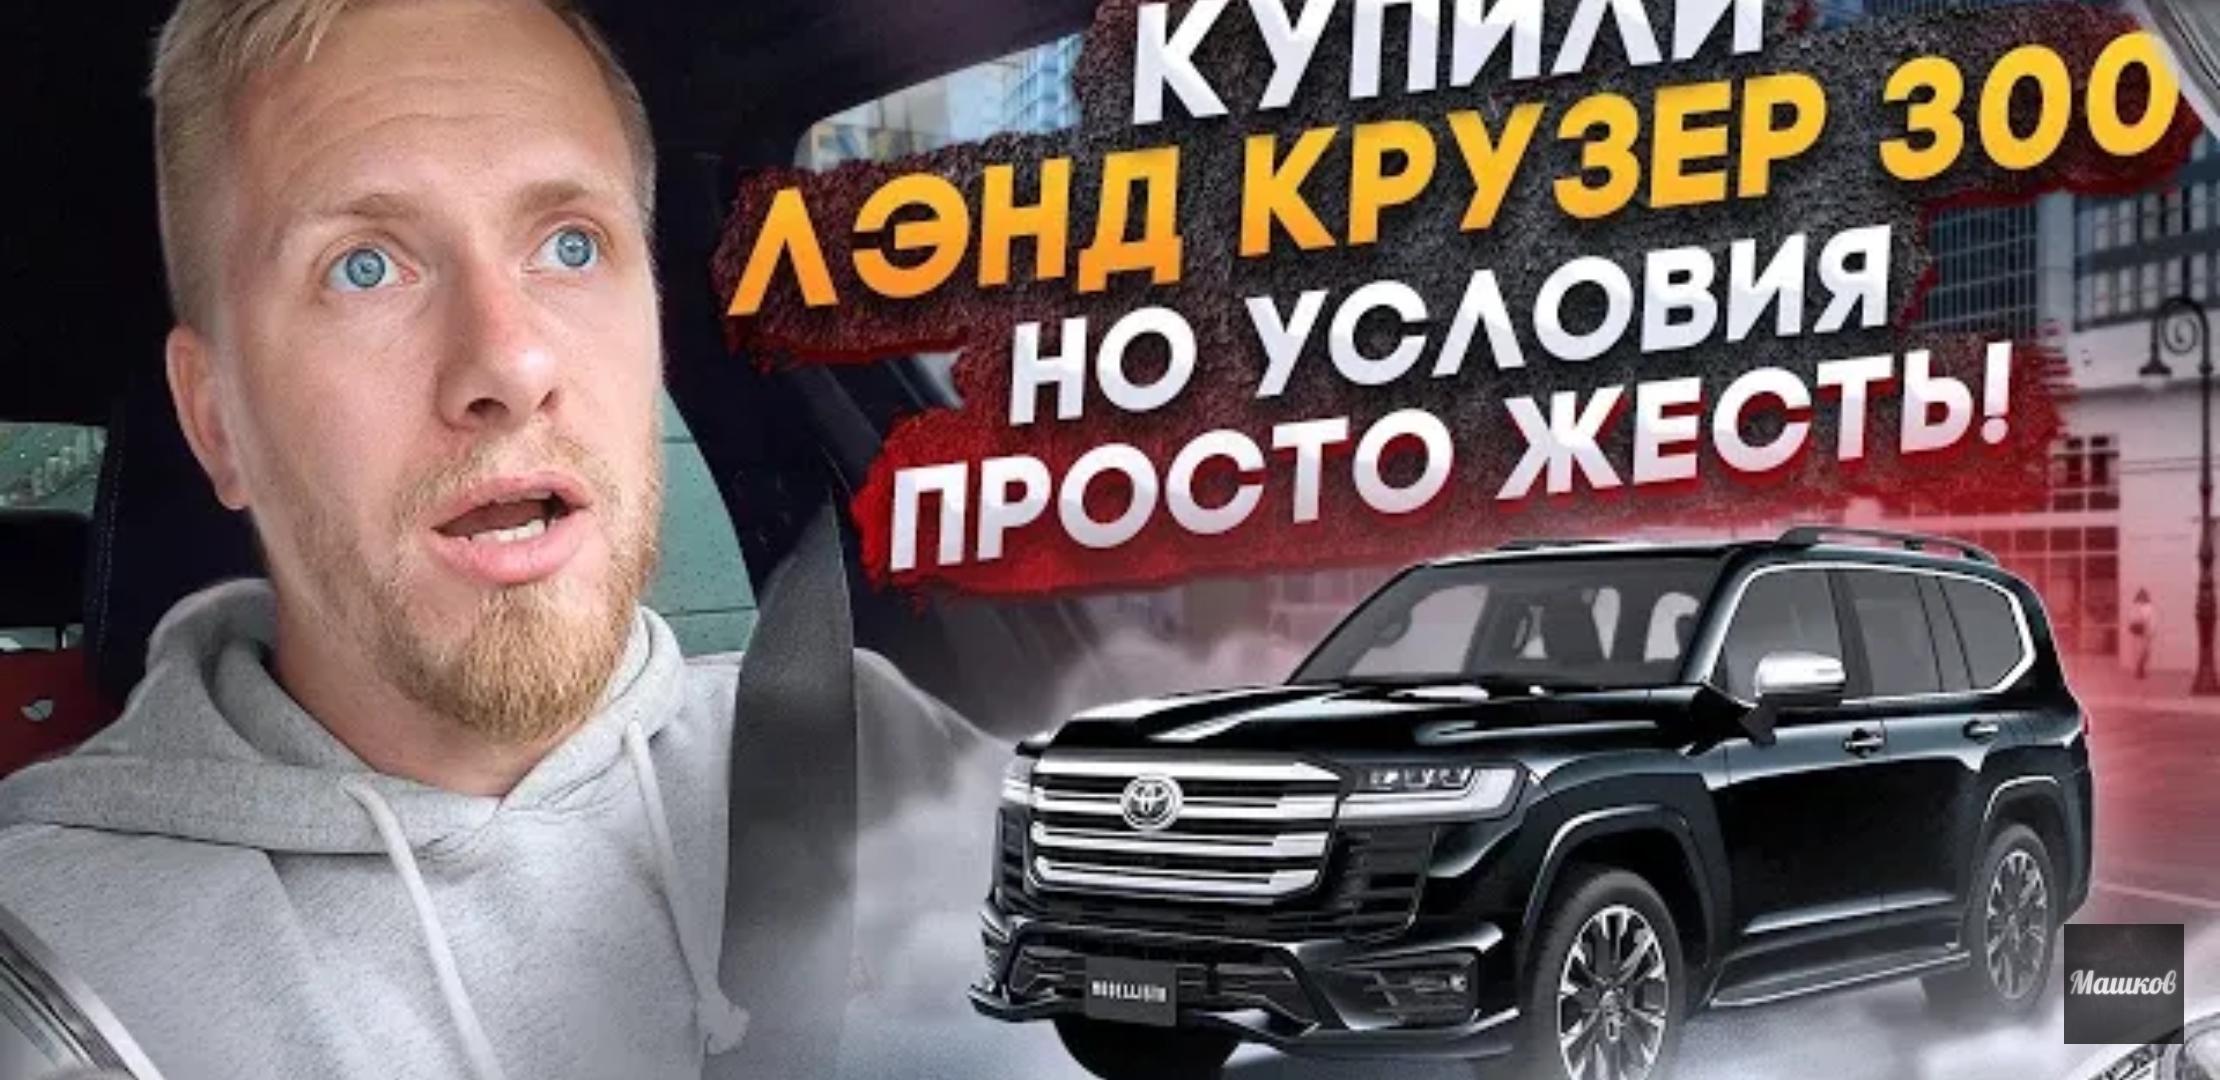 Анонс видео-теста Как в России нынче машины дорогие продают! 